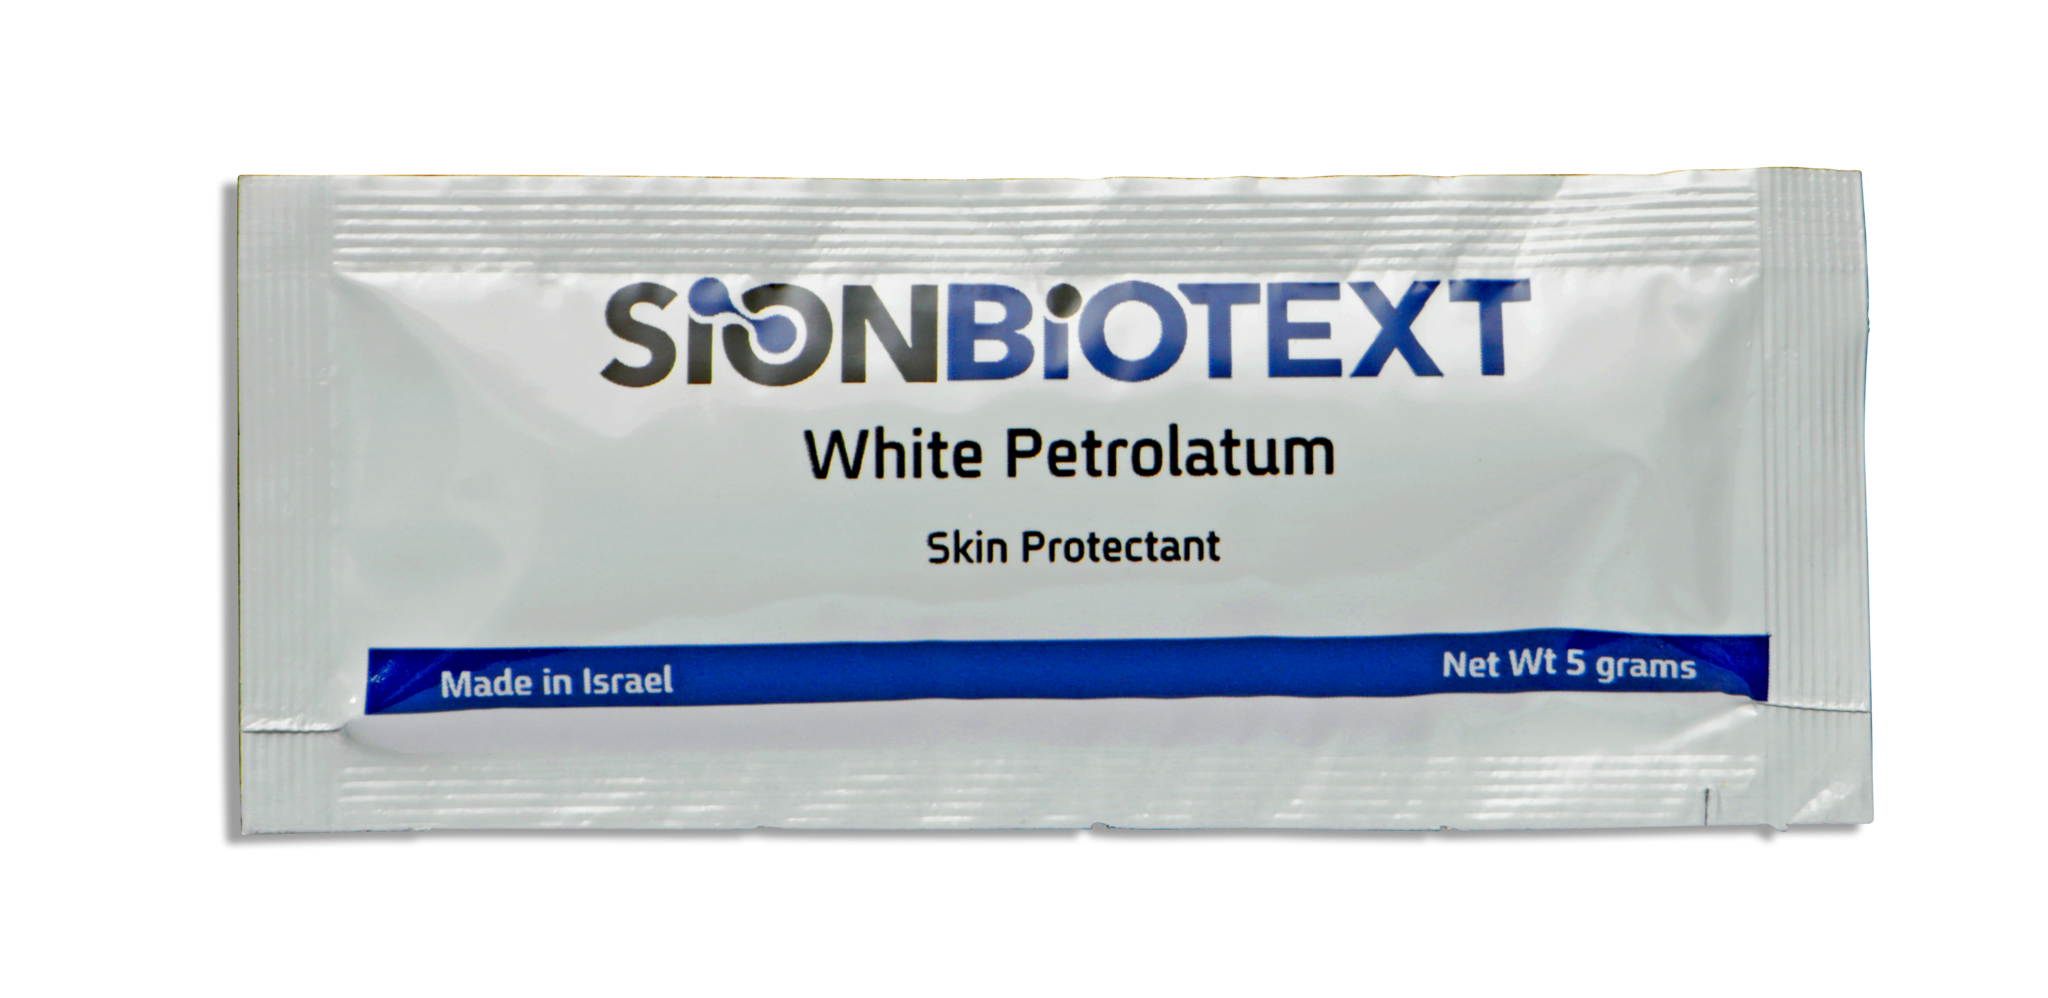 White Petrolatum | Focus Health Group